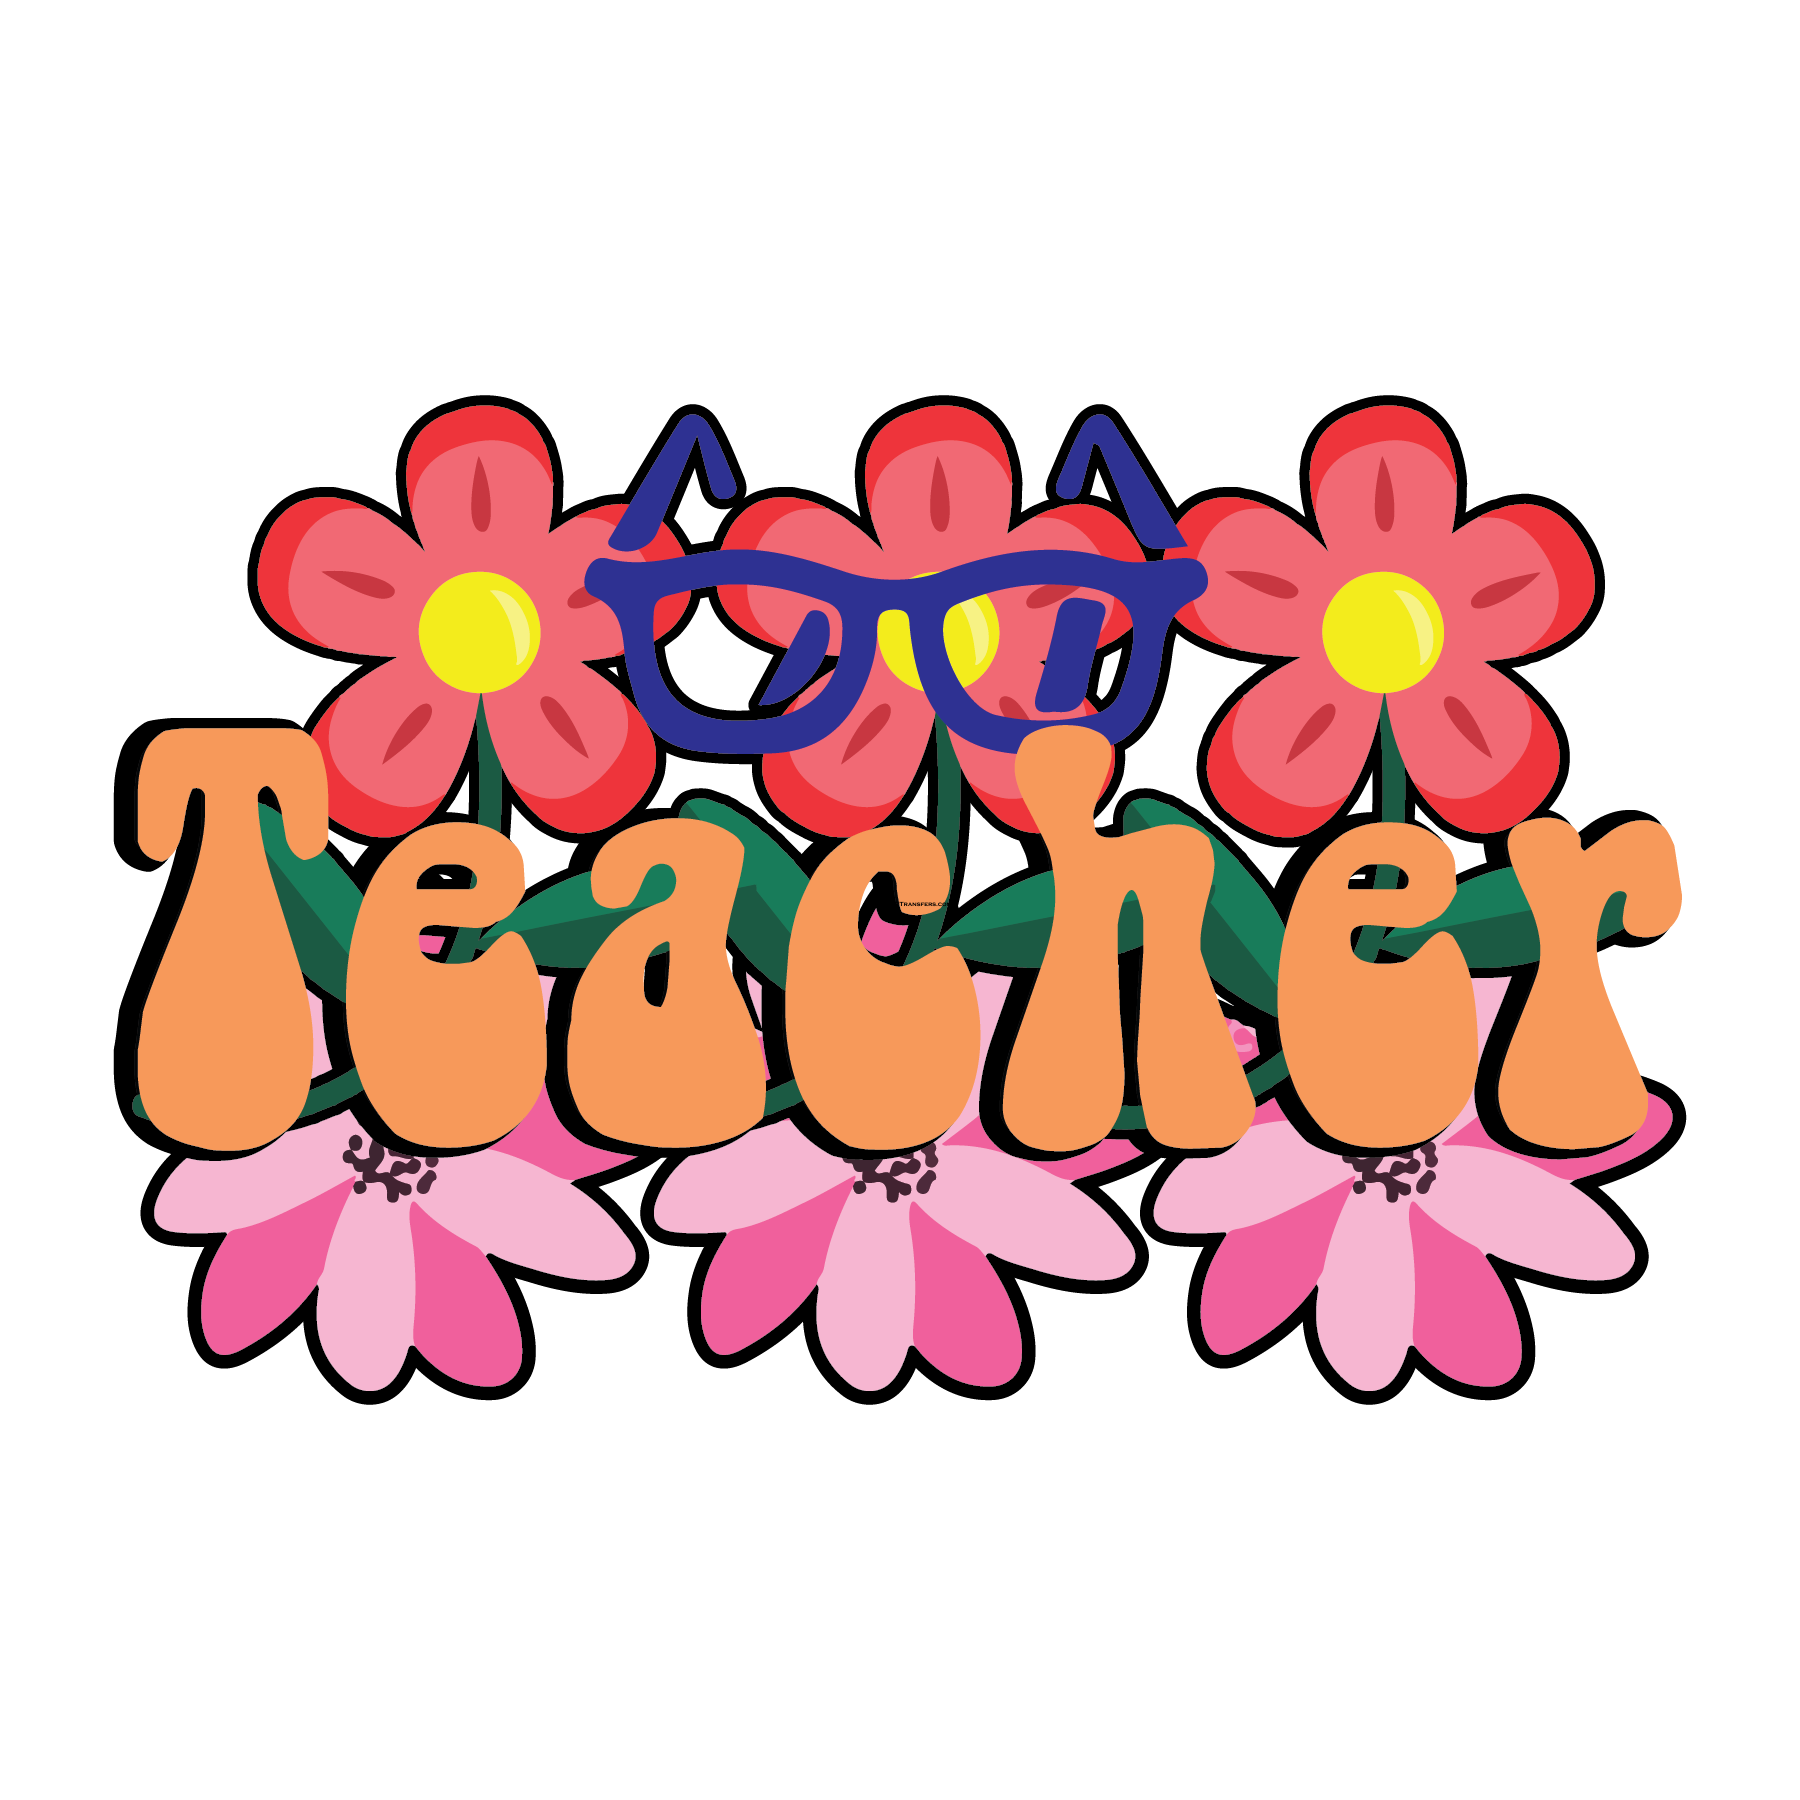 Teacher Flowers Glasses Full Color DTF Transfer - Pro DTF Transfers